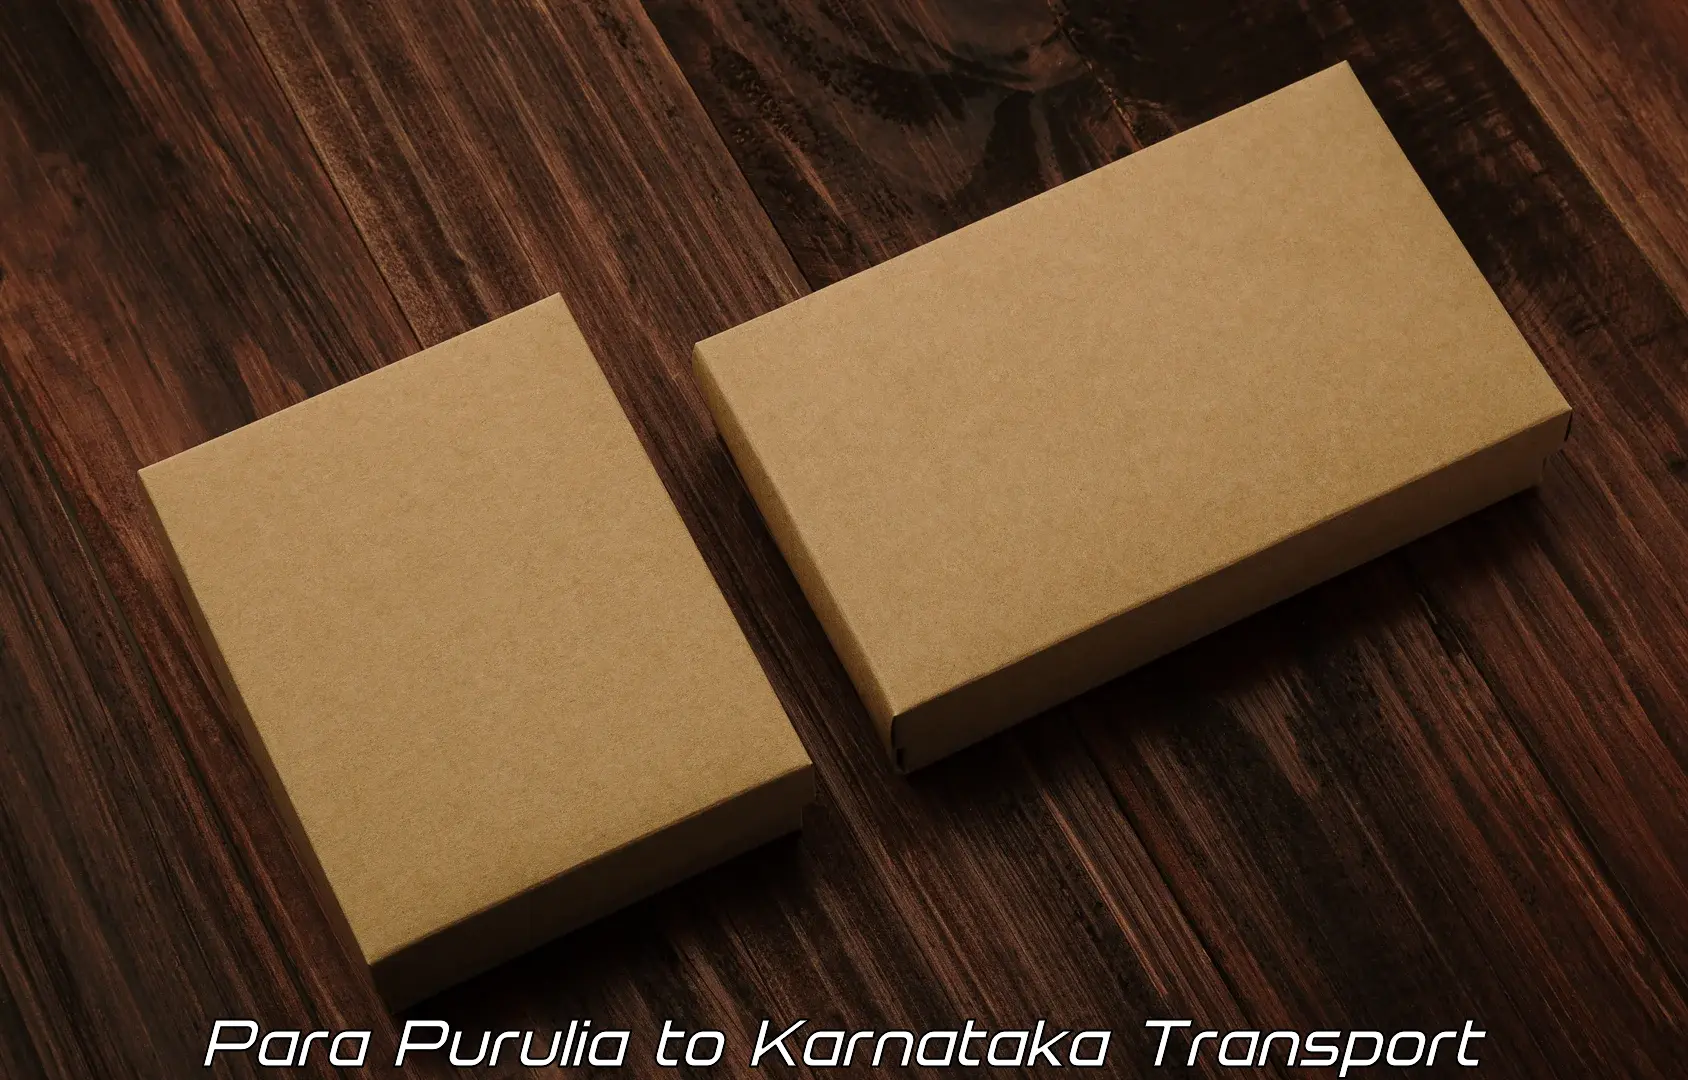 Commercial transport service Para Purulia to Uttara Kannada